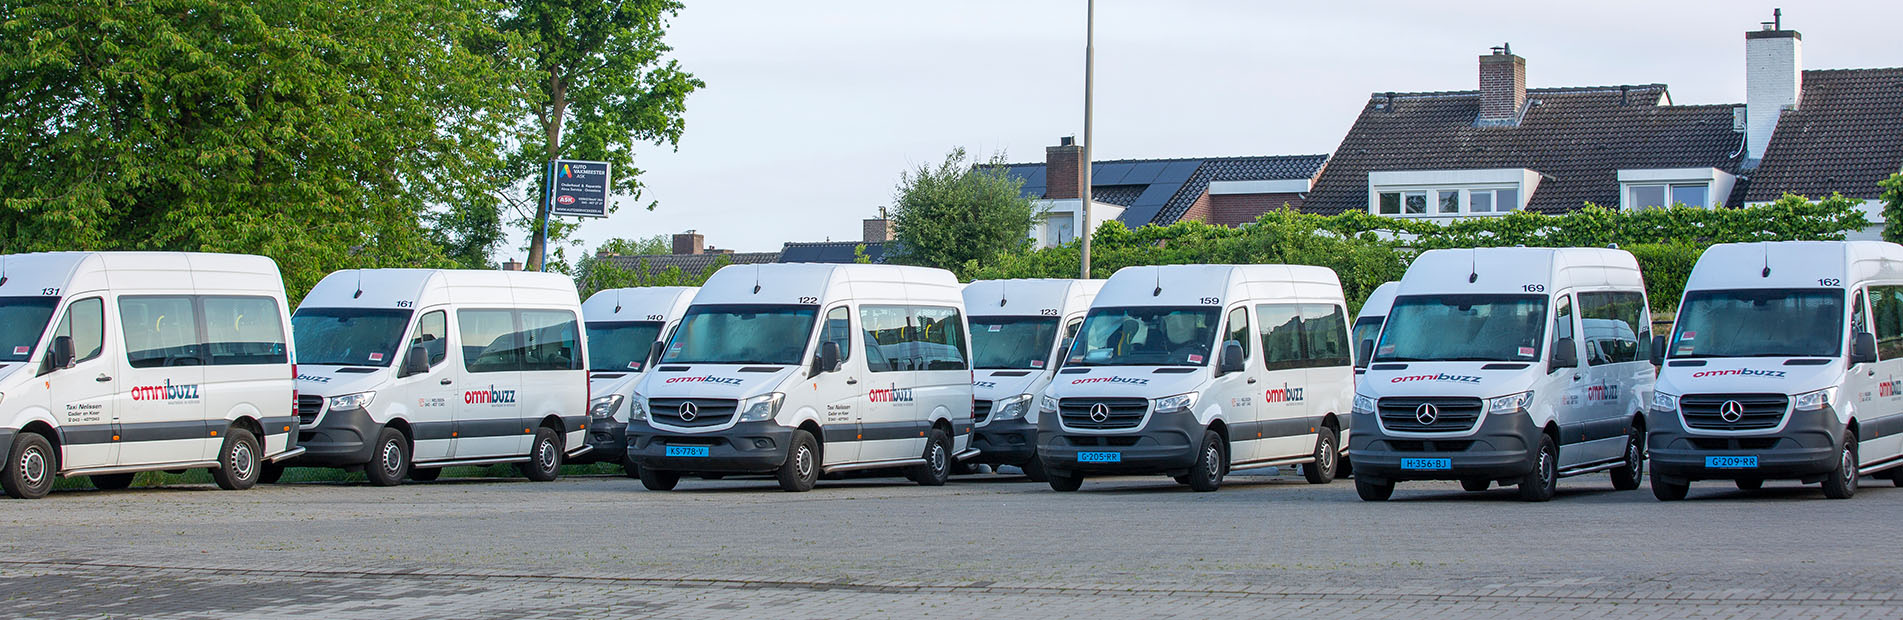 Uw veilige, vertrouwde en full-service taxi uit regio Maastricht